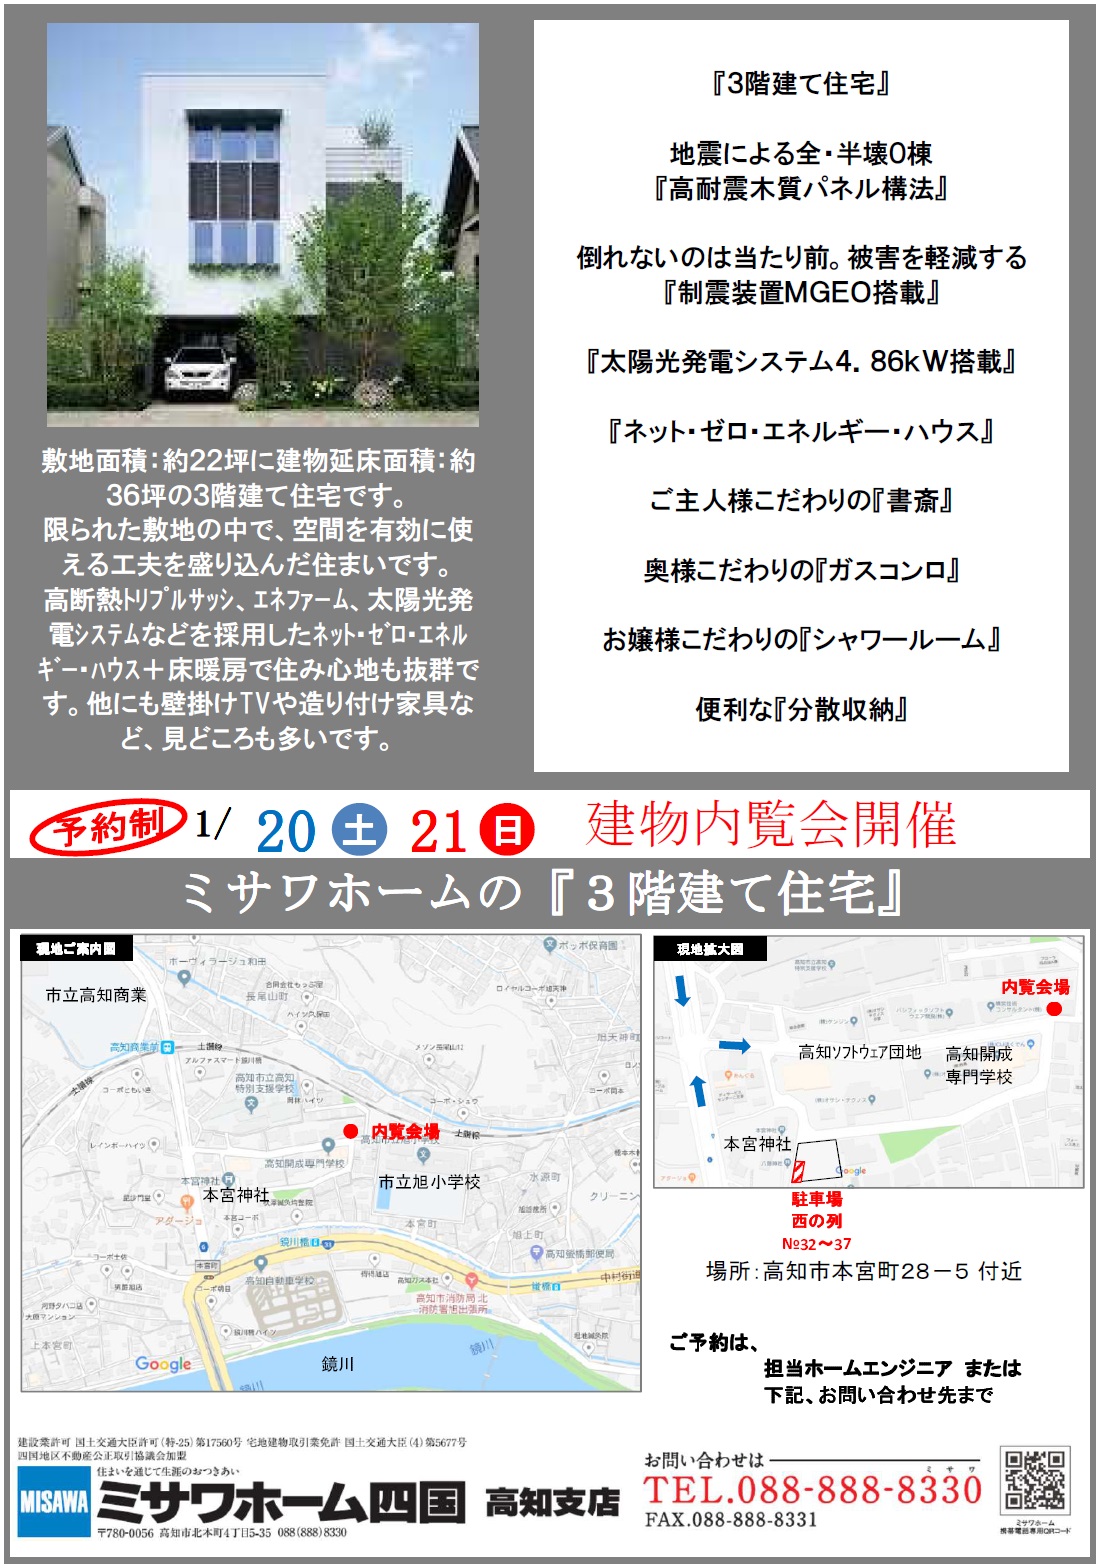 http://shikoku.misawa.co.jp/area_kouchi/H30.01.20_%E5%86%85%E8%A6%A7%E4%BC%9A.jpg